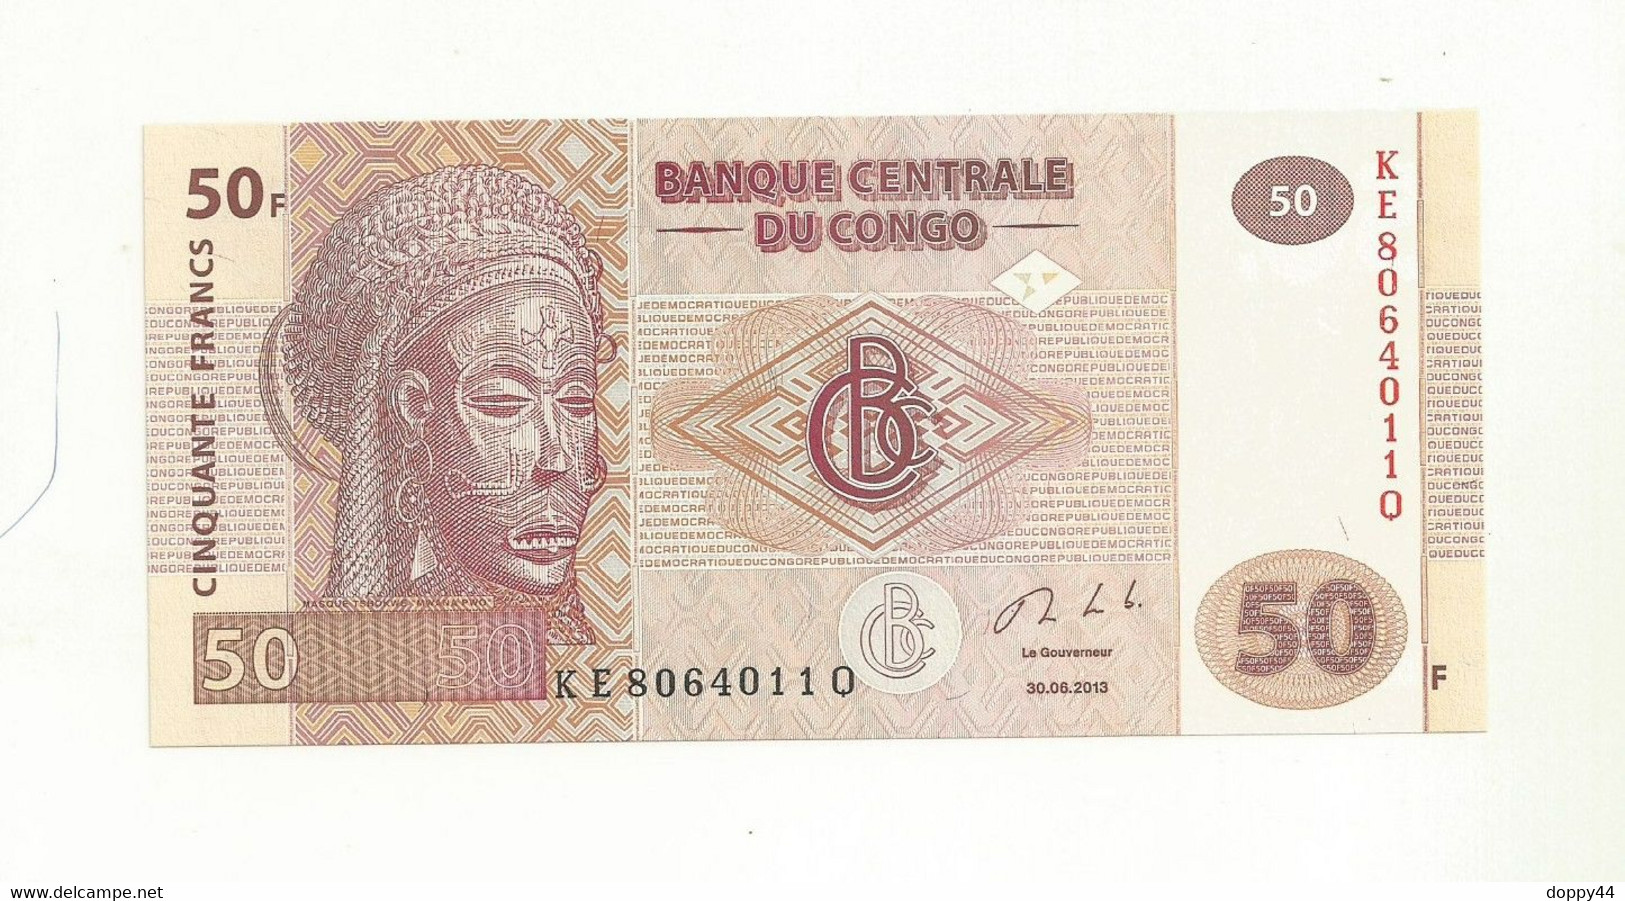 BILLET NEUF BANQUE CENTRALE DU CONGO 50 FRANCS EMIS EN 2013 SUPERBE. - Republik Kongo (Kongo-Brazzaville)